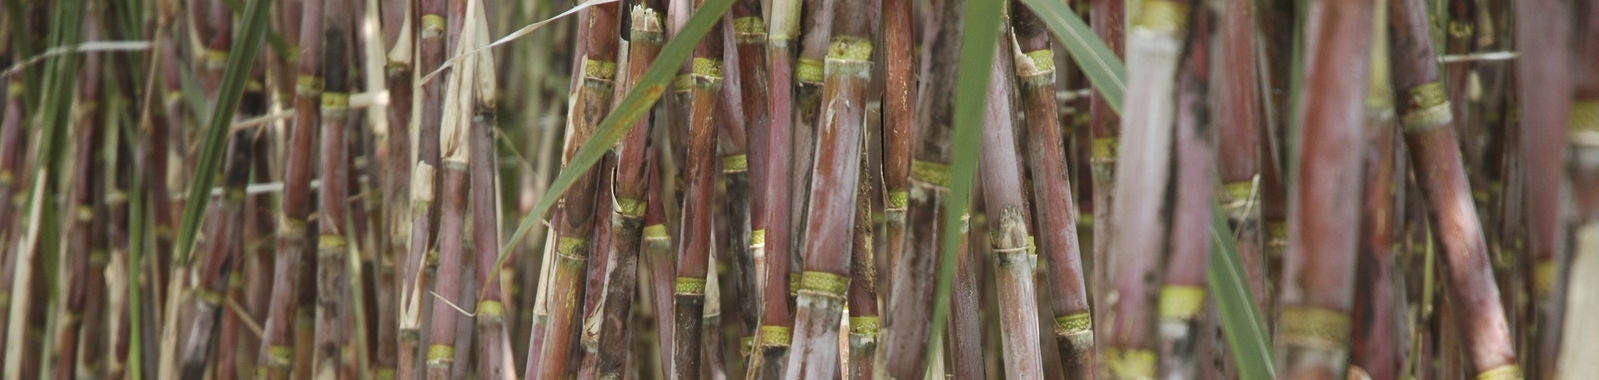 Reducing Sugarcane Fibre Content